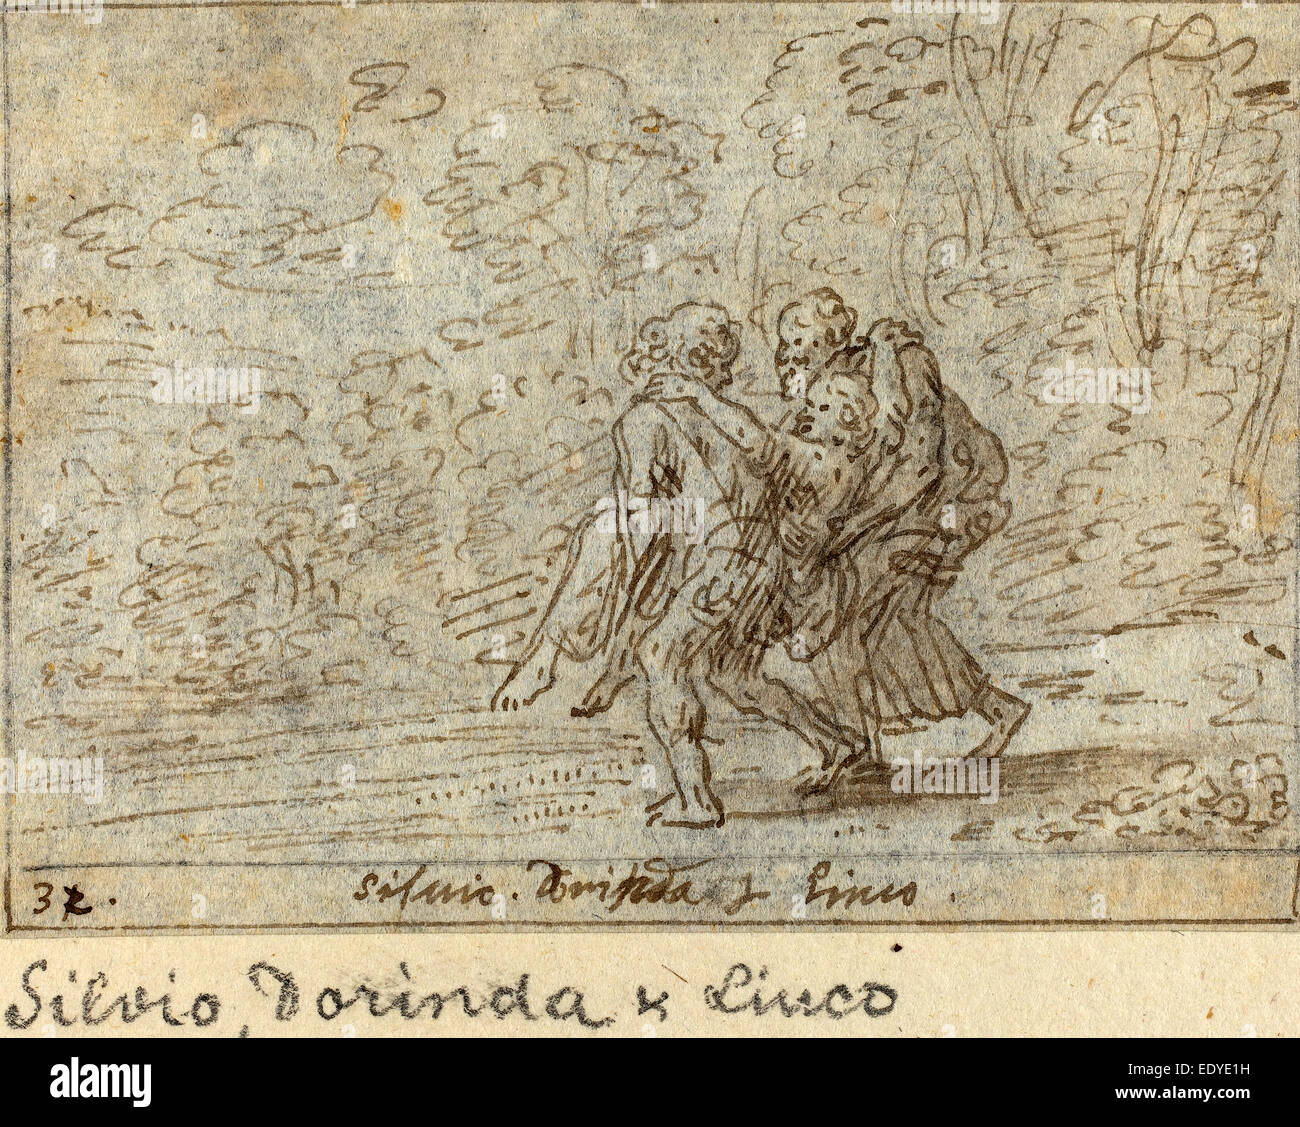 Johann Wilhelm Baur (Allemand, 1607 - 1641), Silvio, Dorinda et Linco, 1640, plume et encre brune avec lavis sur papier vergé Banque D'Images